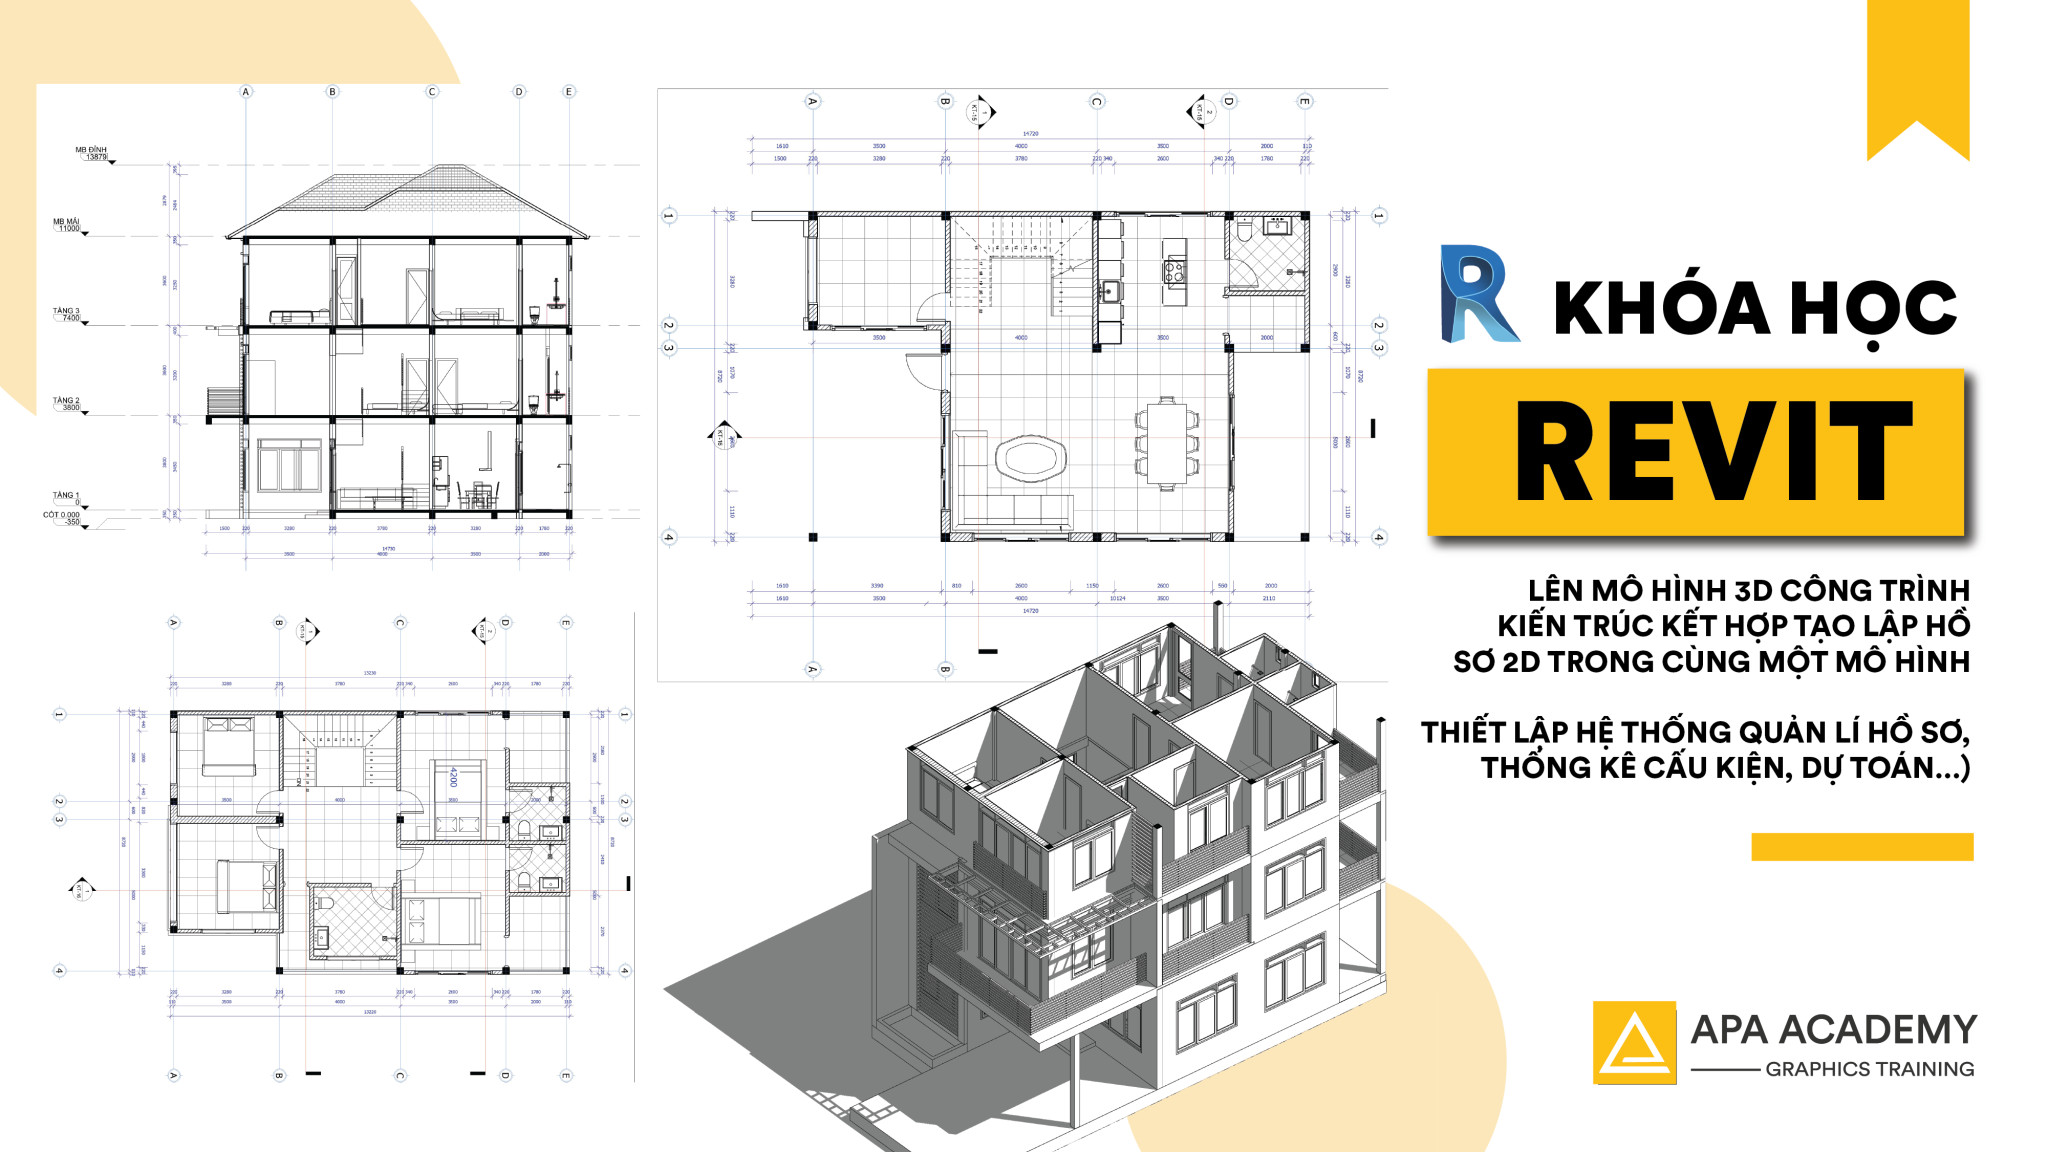 Revit Architecture là phần mềm đỉnh cao về thiết kế kiến trúc. Được sử dụng rộng rãi trong ngành xây dựng, Revit là công cụ giúp chuyển đổi ý tưởng thành hình ảnh cụ thể, mang lại sự thuận tiện và tiết kiệm thời gian đáng kể cho các nhà thiết kế. Hãy cùng khám phá những bản vẽ ấn tượng được tạo ra từ phần mềm này.